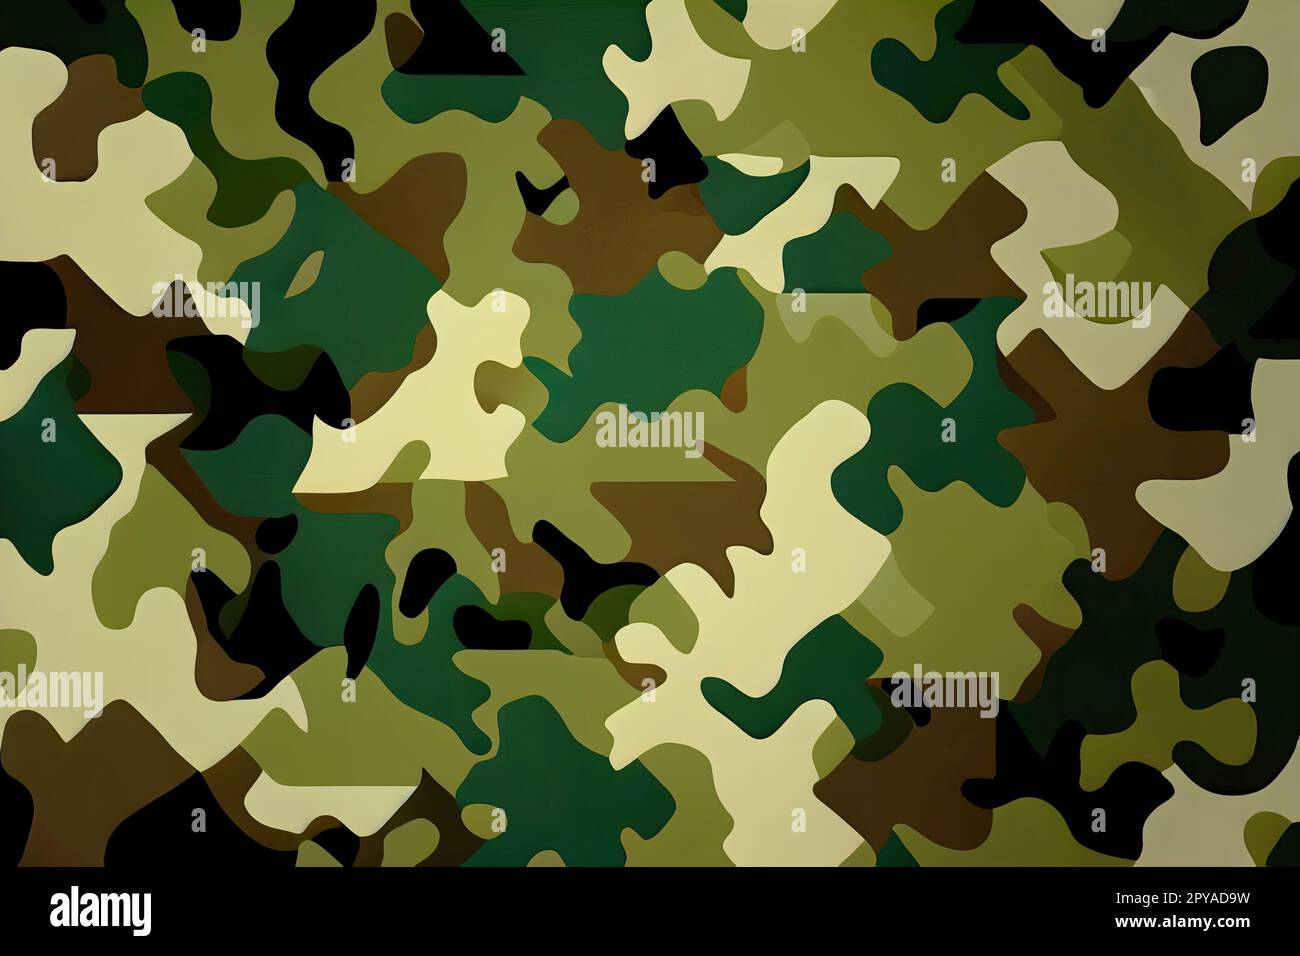 motif de camouflage militaire ou fond de couleur camouflage Banque D'Images